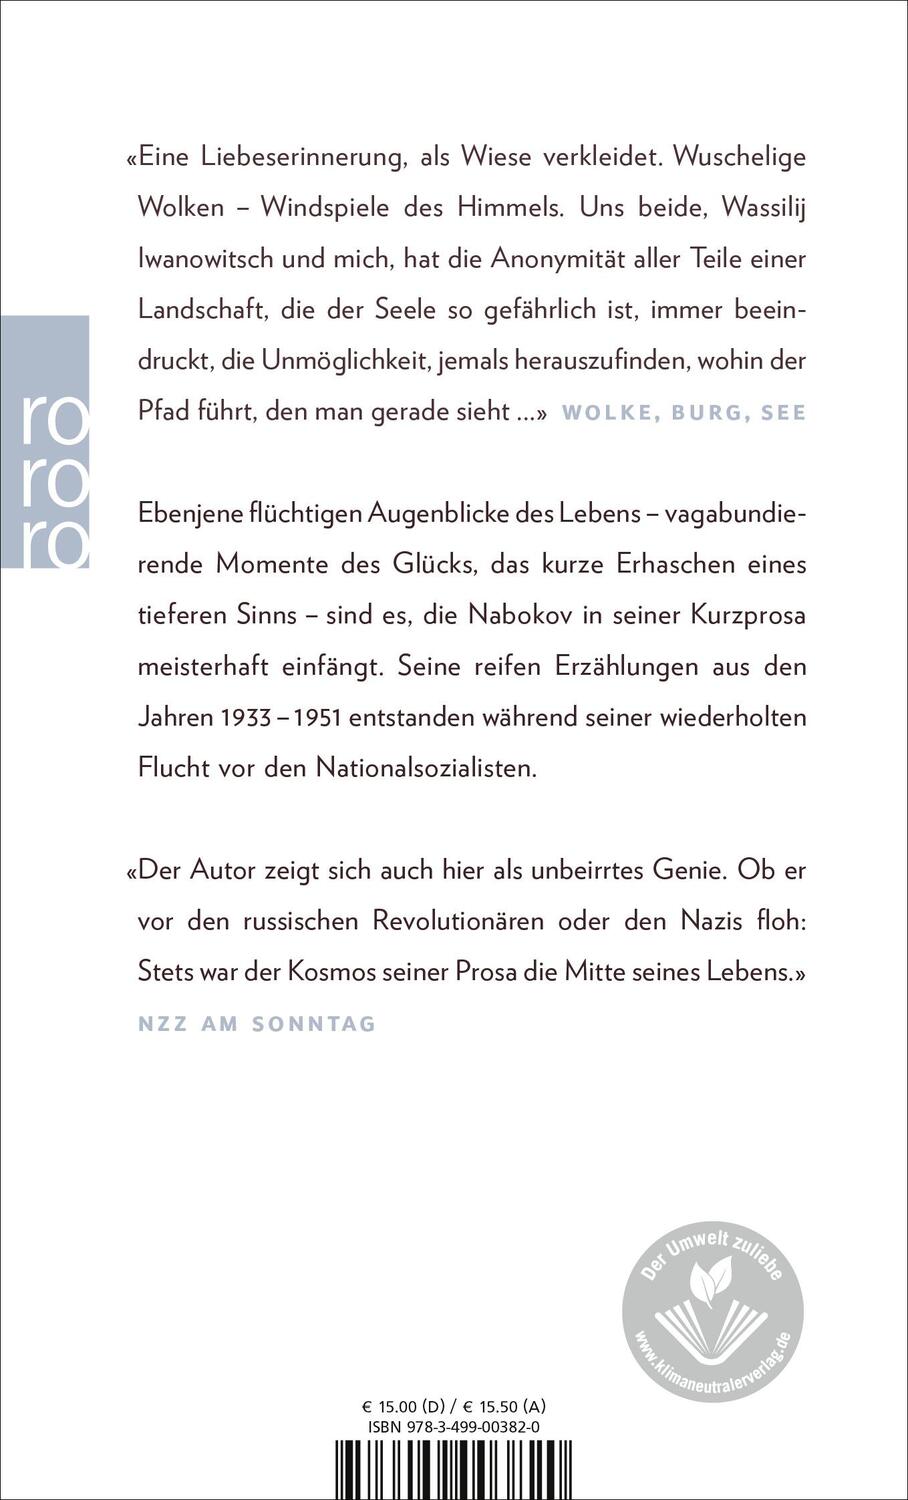 Rückseite: 9783499003820 | Wolke, Burg, See | Sämtliche Erzählungen 1933 bis 1951 | Nabokov